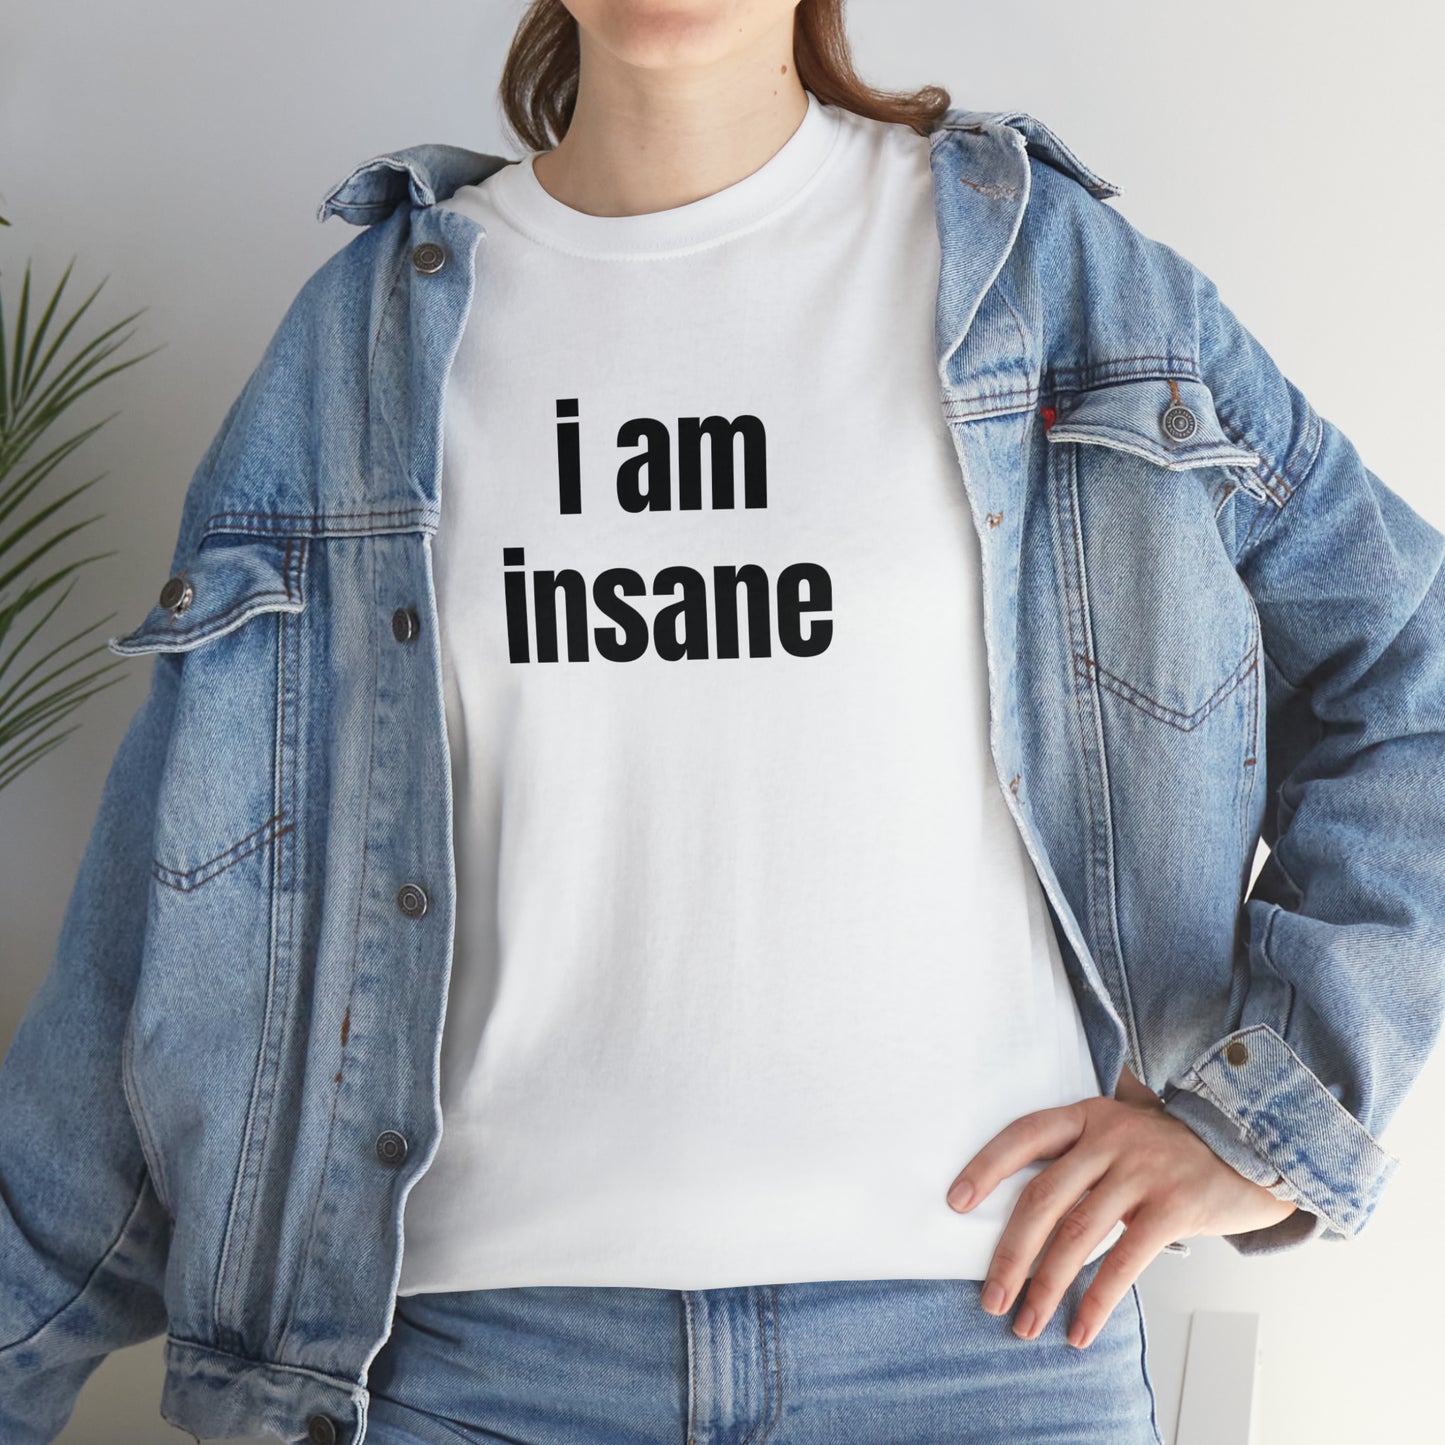 I AM INSANE T-SHIRT